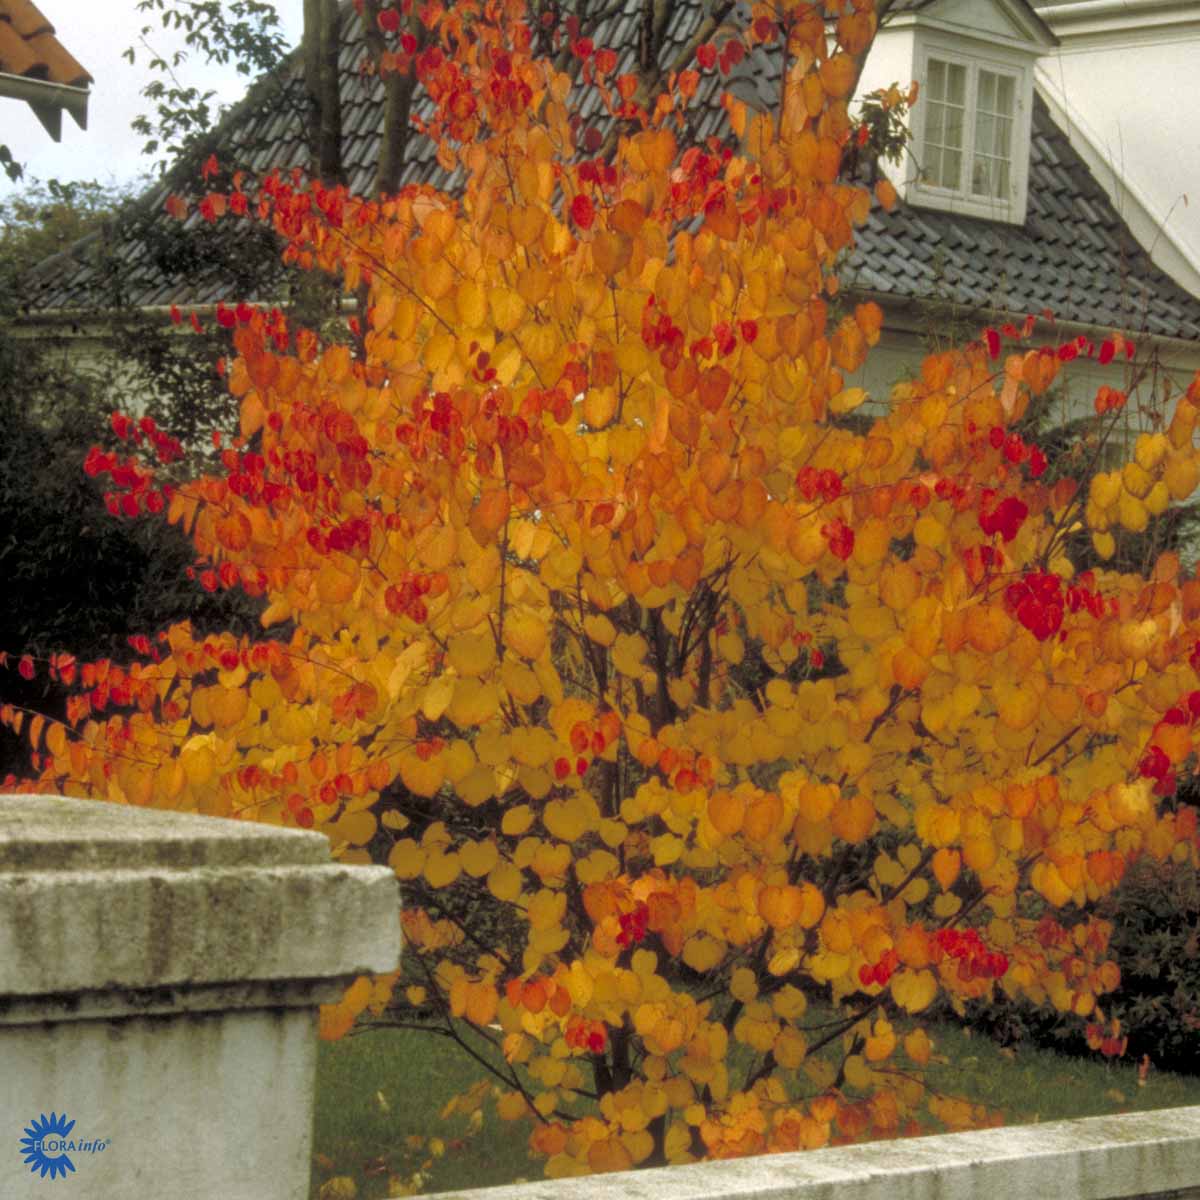 Hjertetræ, også kaldt Katsua, er et løvfældende træ der har enestående høstfarver i røde og gule toner